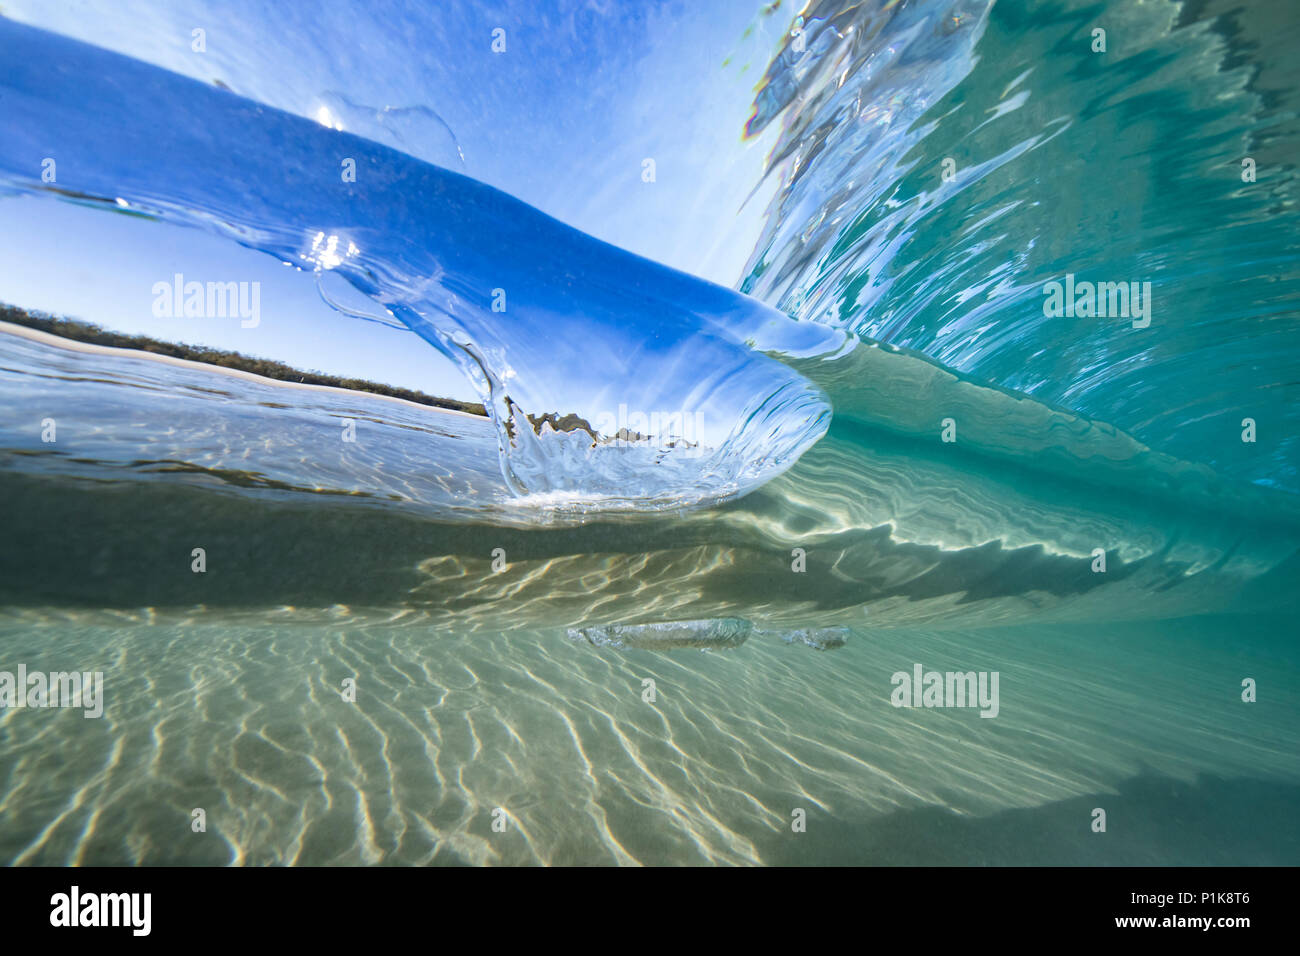 Vue sous-marine d'une onde de rupture dans l'océan, Queensland, Australie Banque D'Images